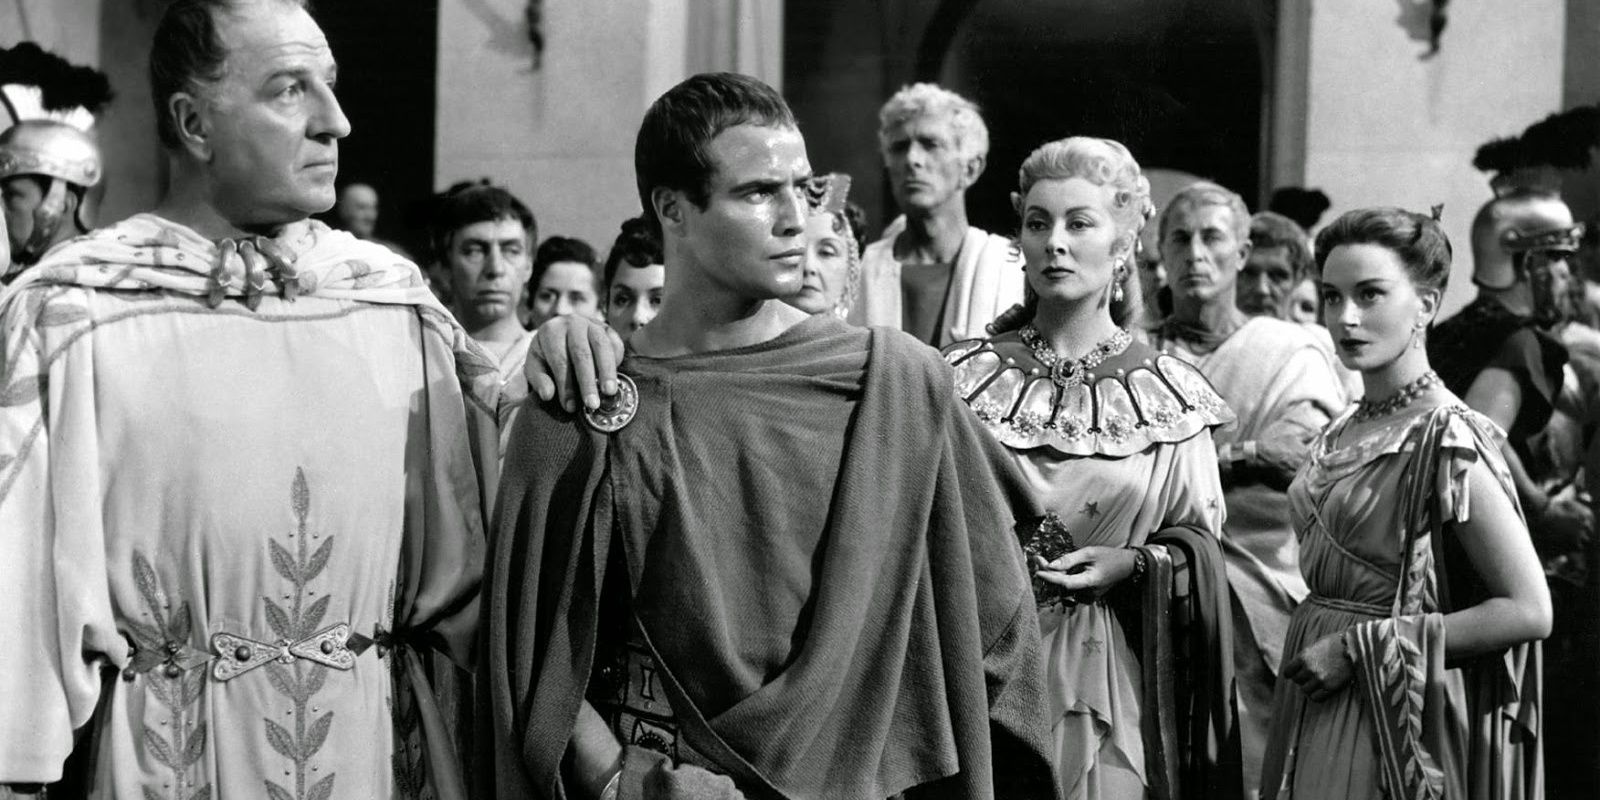 Still photo from Julius Caesar film production